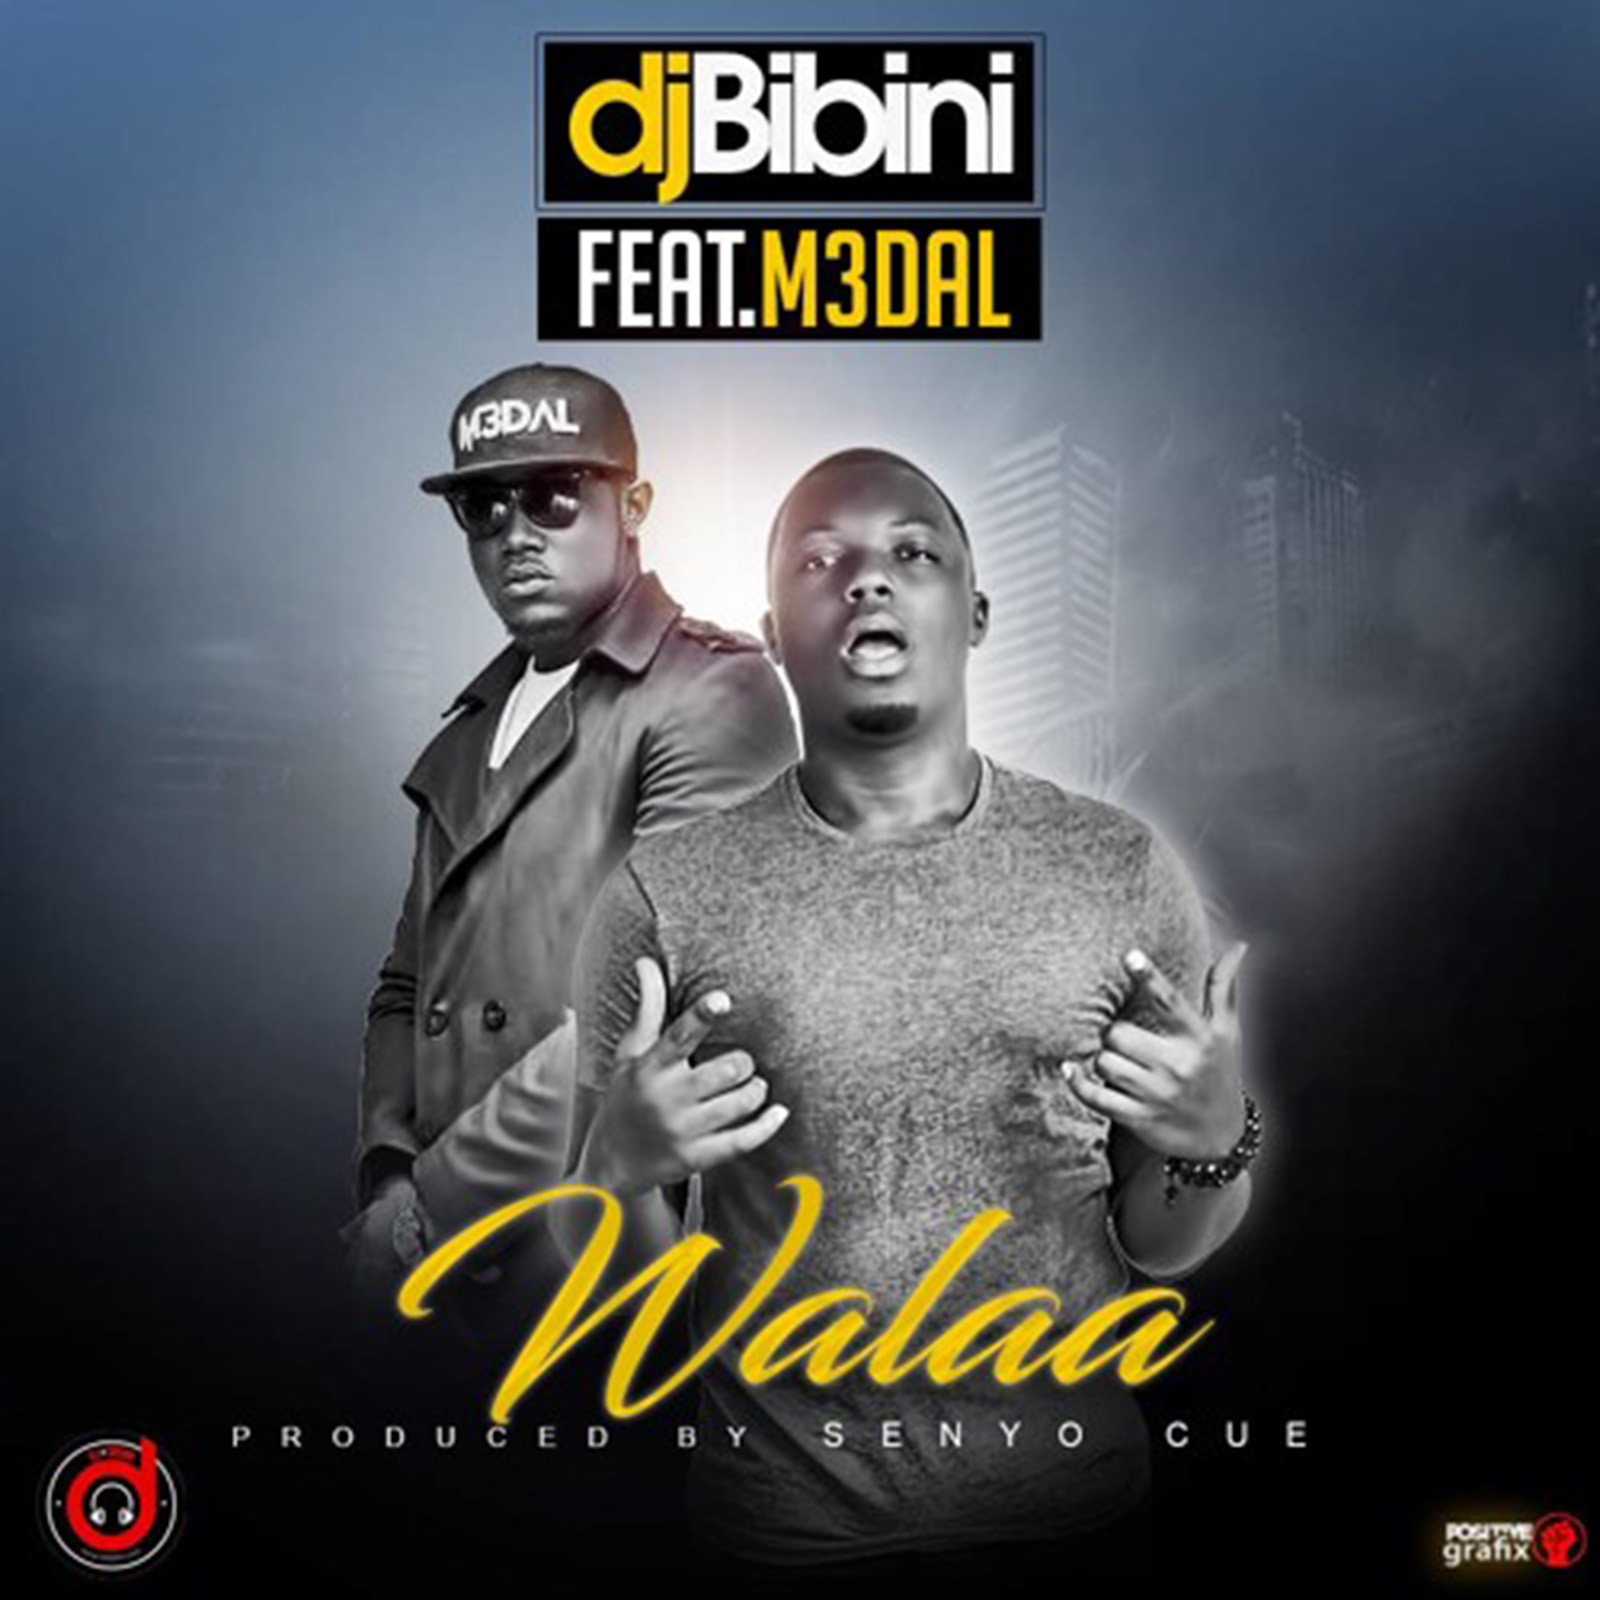 Walaa by DJ Bibini feat. M3dal